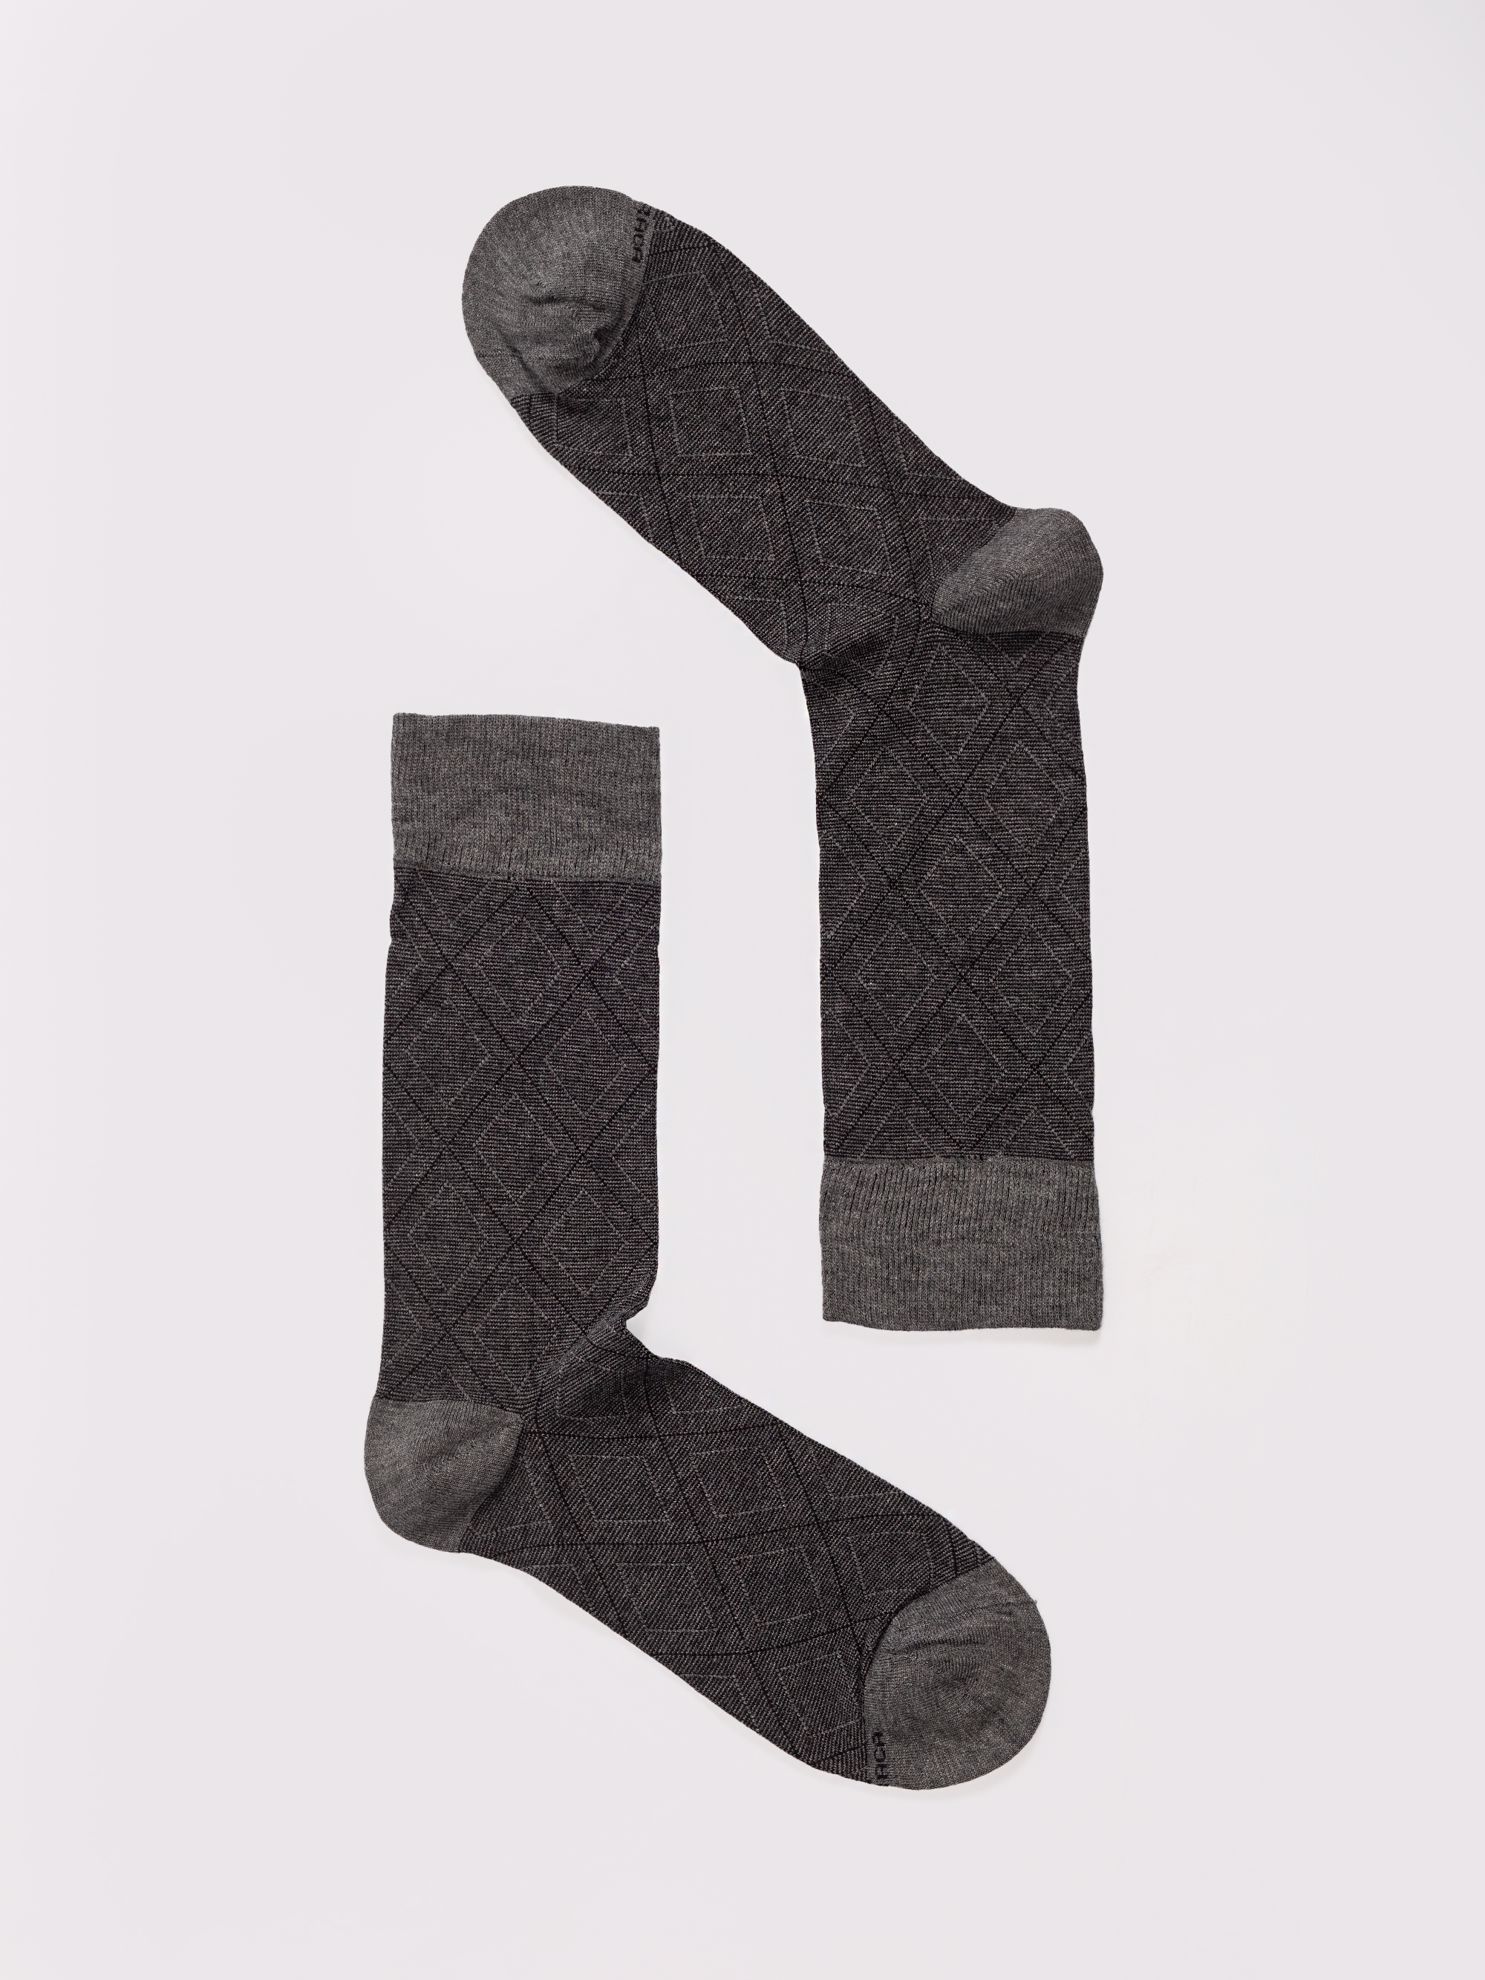 Karaca Erkek Soket Çorap-Gri Melanj. ürün görseli